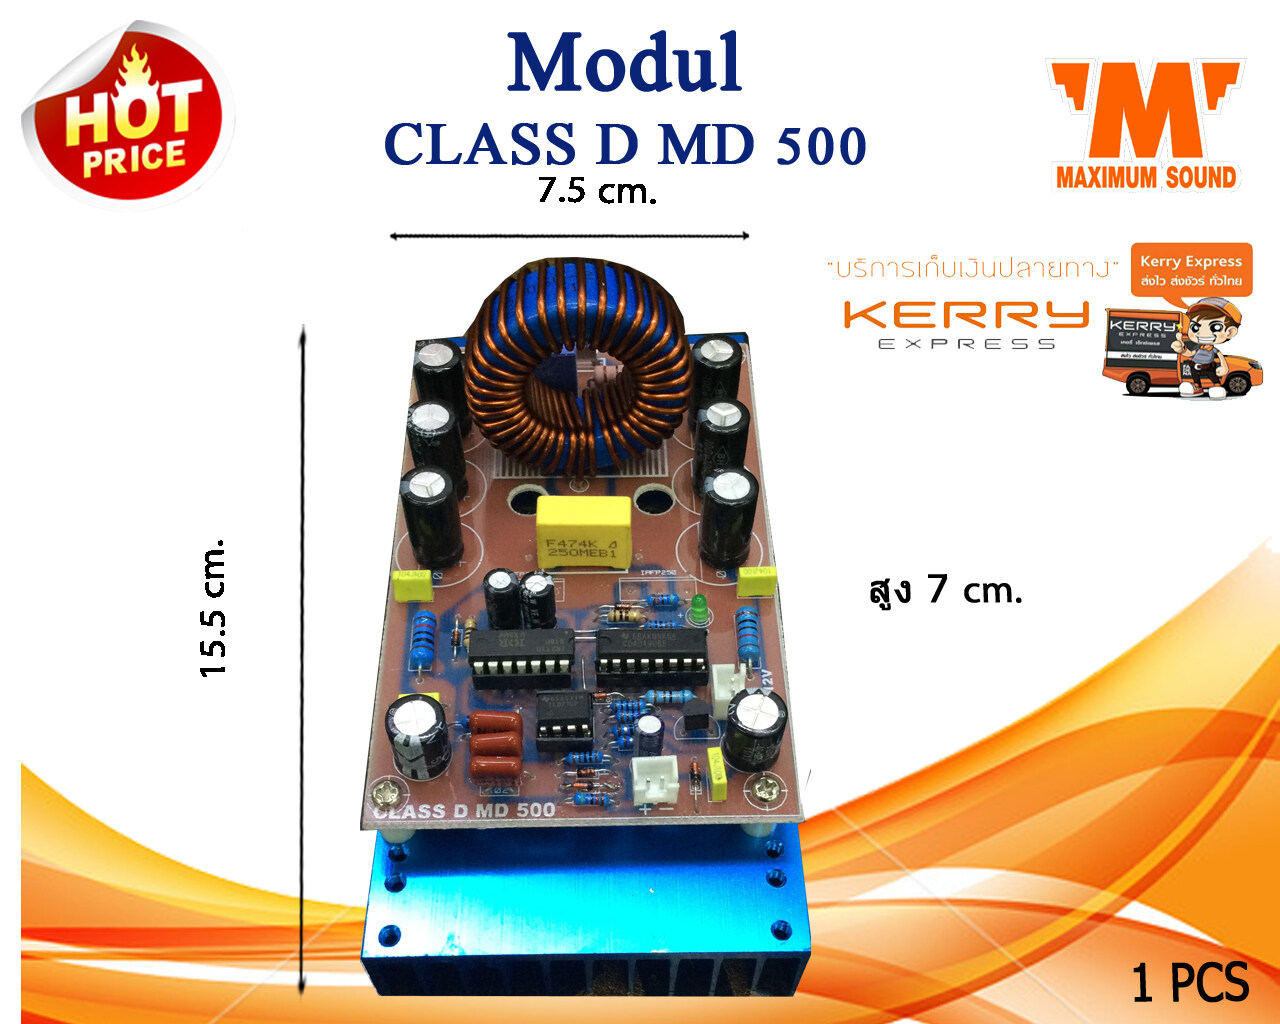 Modul  Class D รุ่น MD 500 บอร์ดพาวเวอร์แอมป์ คลาสดี แรง ชัด ประหยัดมาก  ชิ้นละ 790 บาทเท่านั้น